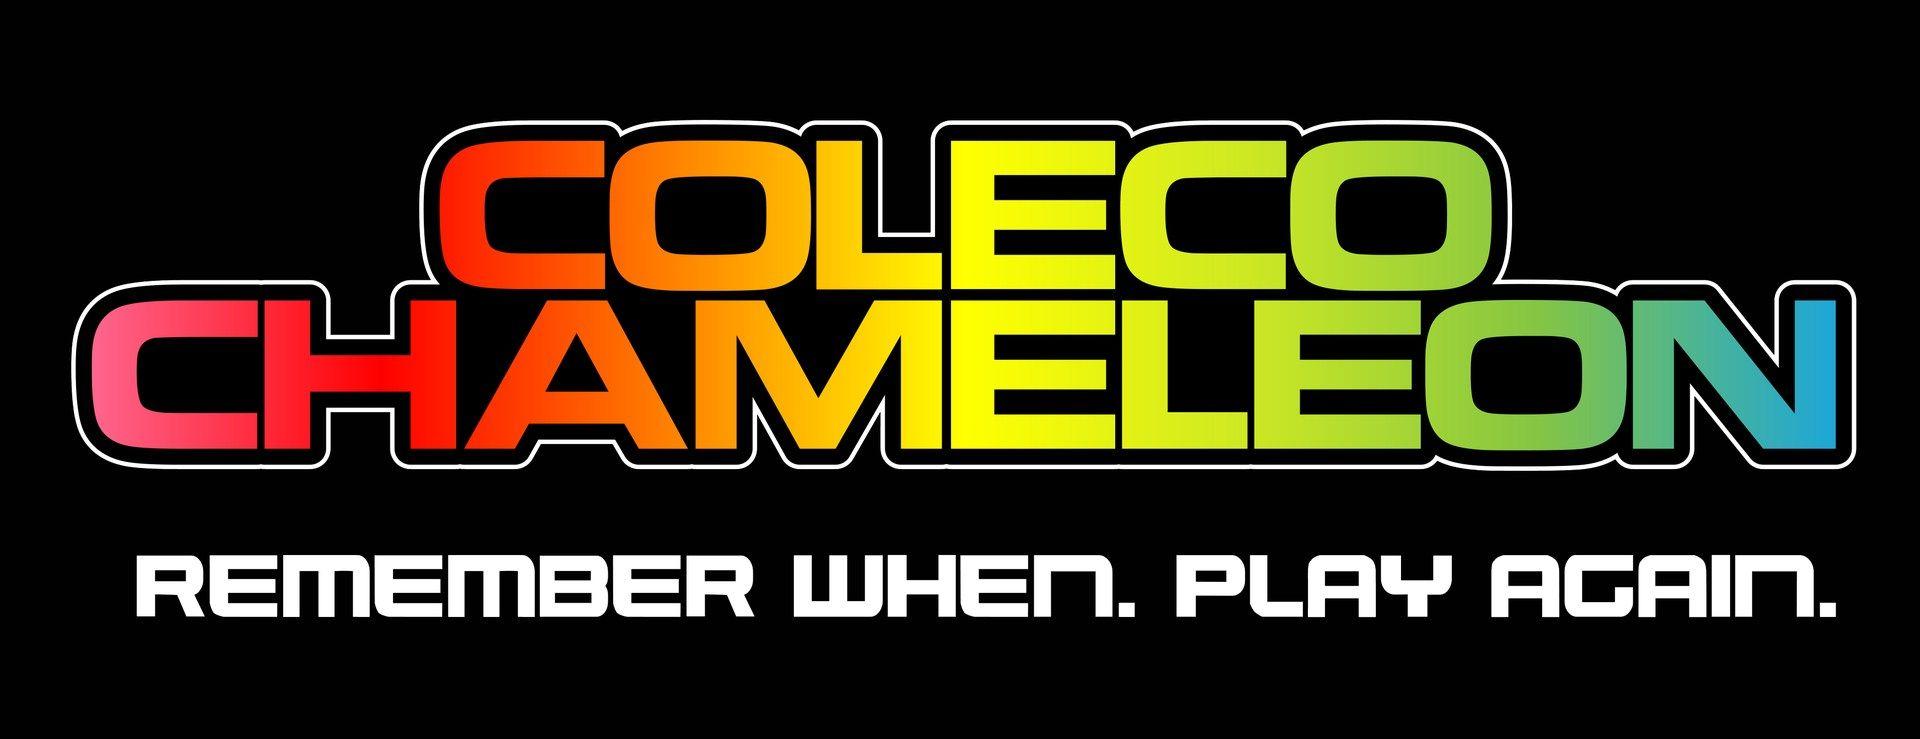 Coleco Logo - chameleon v2 text